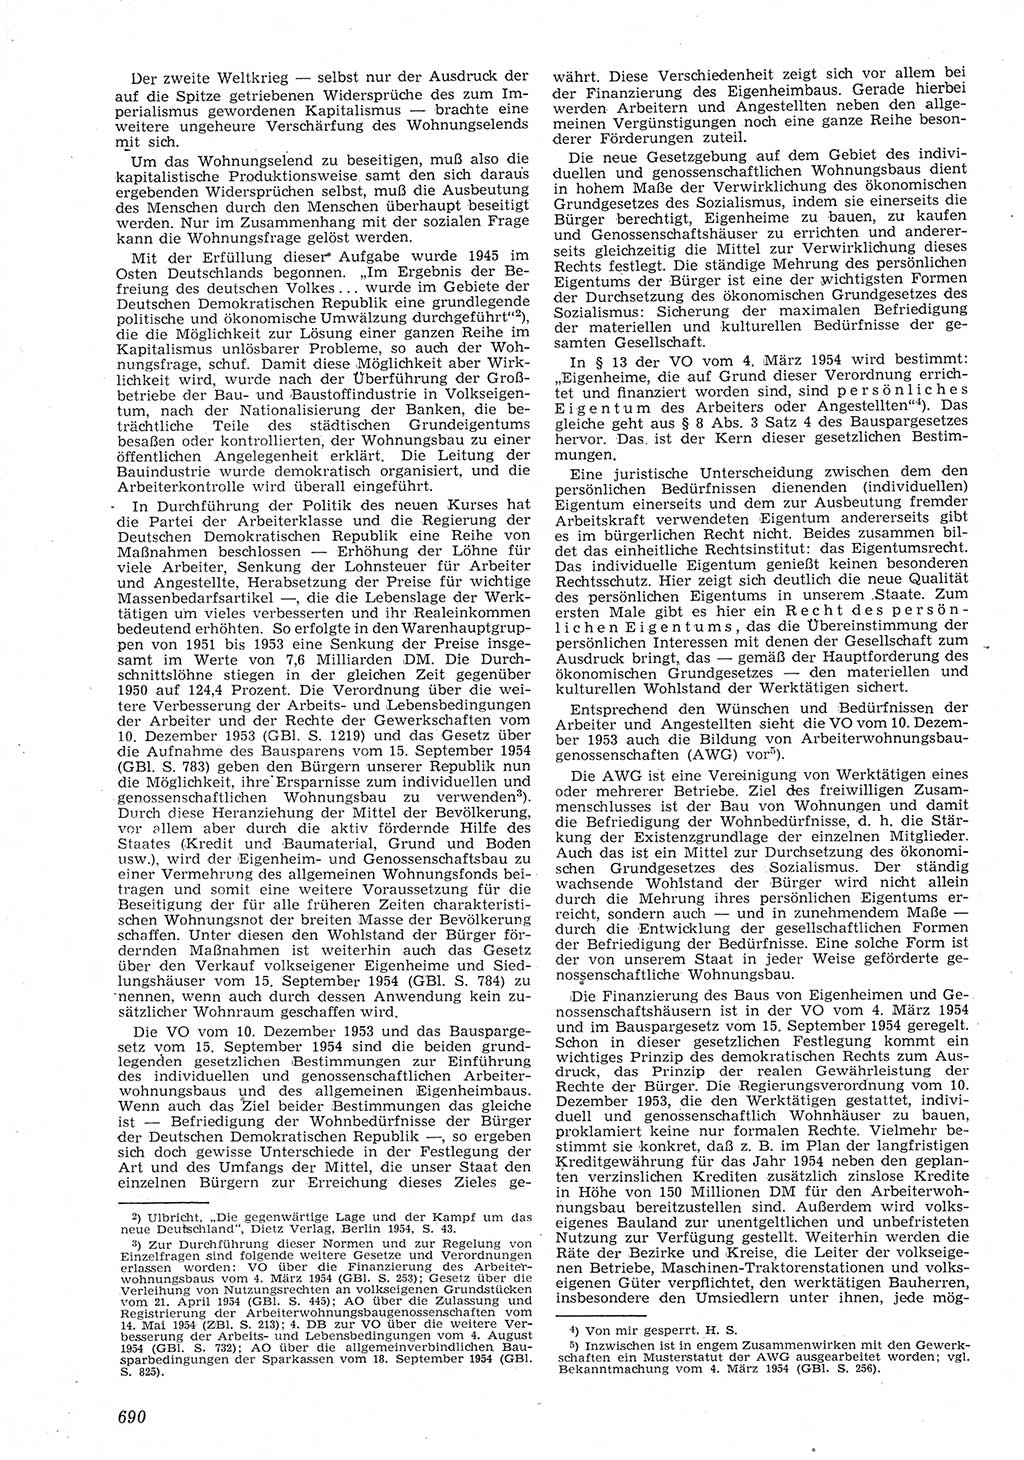 Neue Justiz (NJ), Zeitschrift für Recht und Rechtswissenschaft [Deutsche Demokratische Republik (DDR)], 8. Jahrgang 1954, Seite 690 (NJ DDR 1954, S. 690)